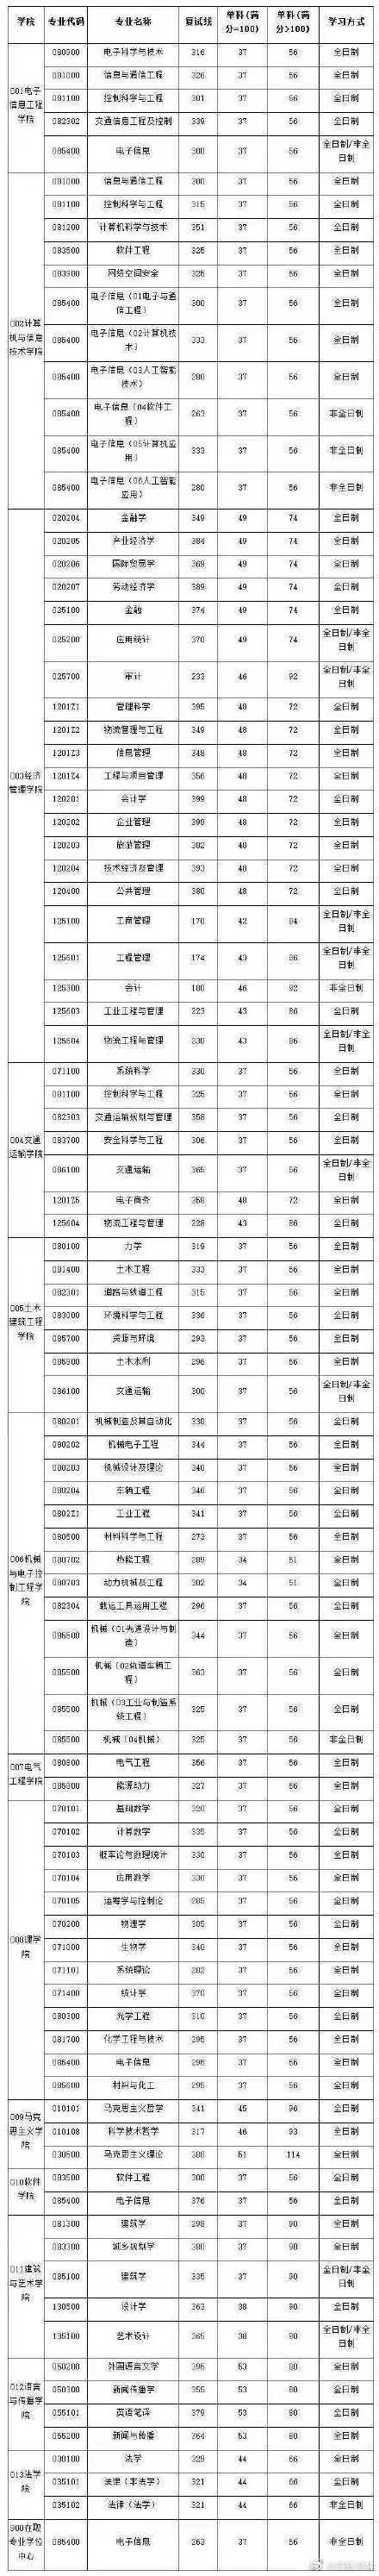 2021北京交通大学硕士研究生考试各专业复试分数线汇总